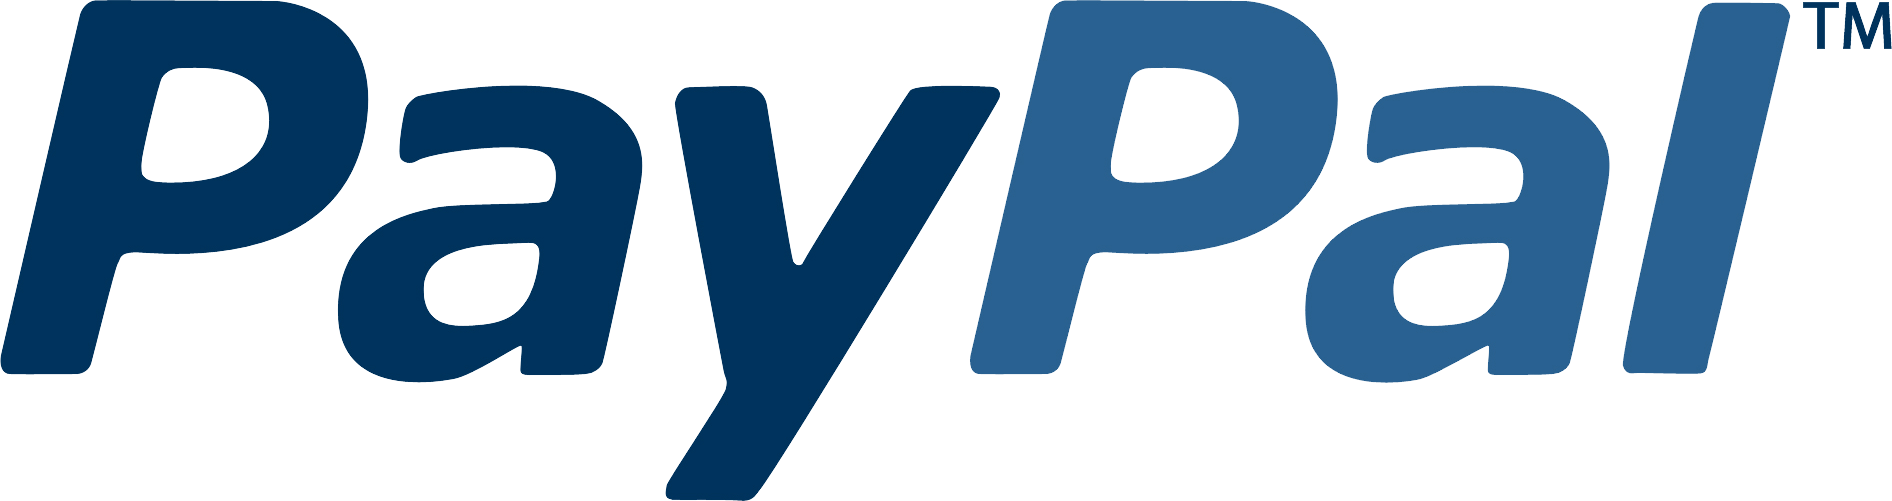 paypal logo png 2143